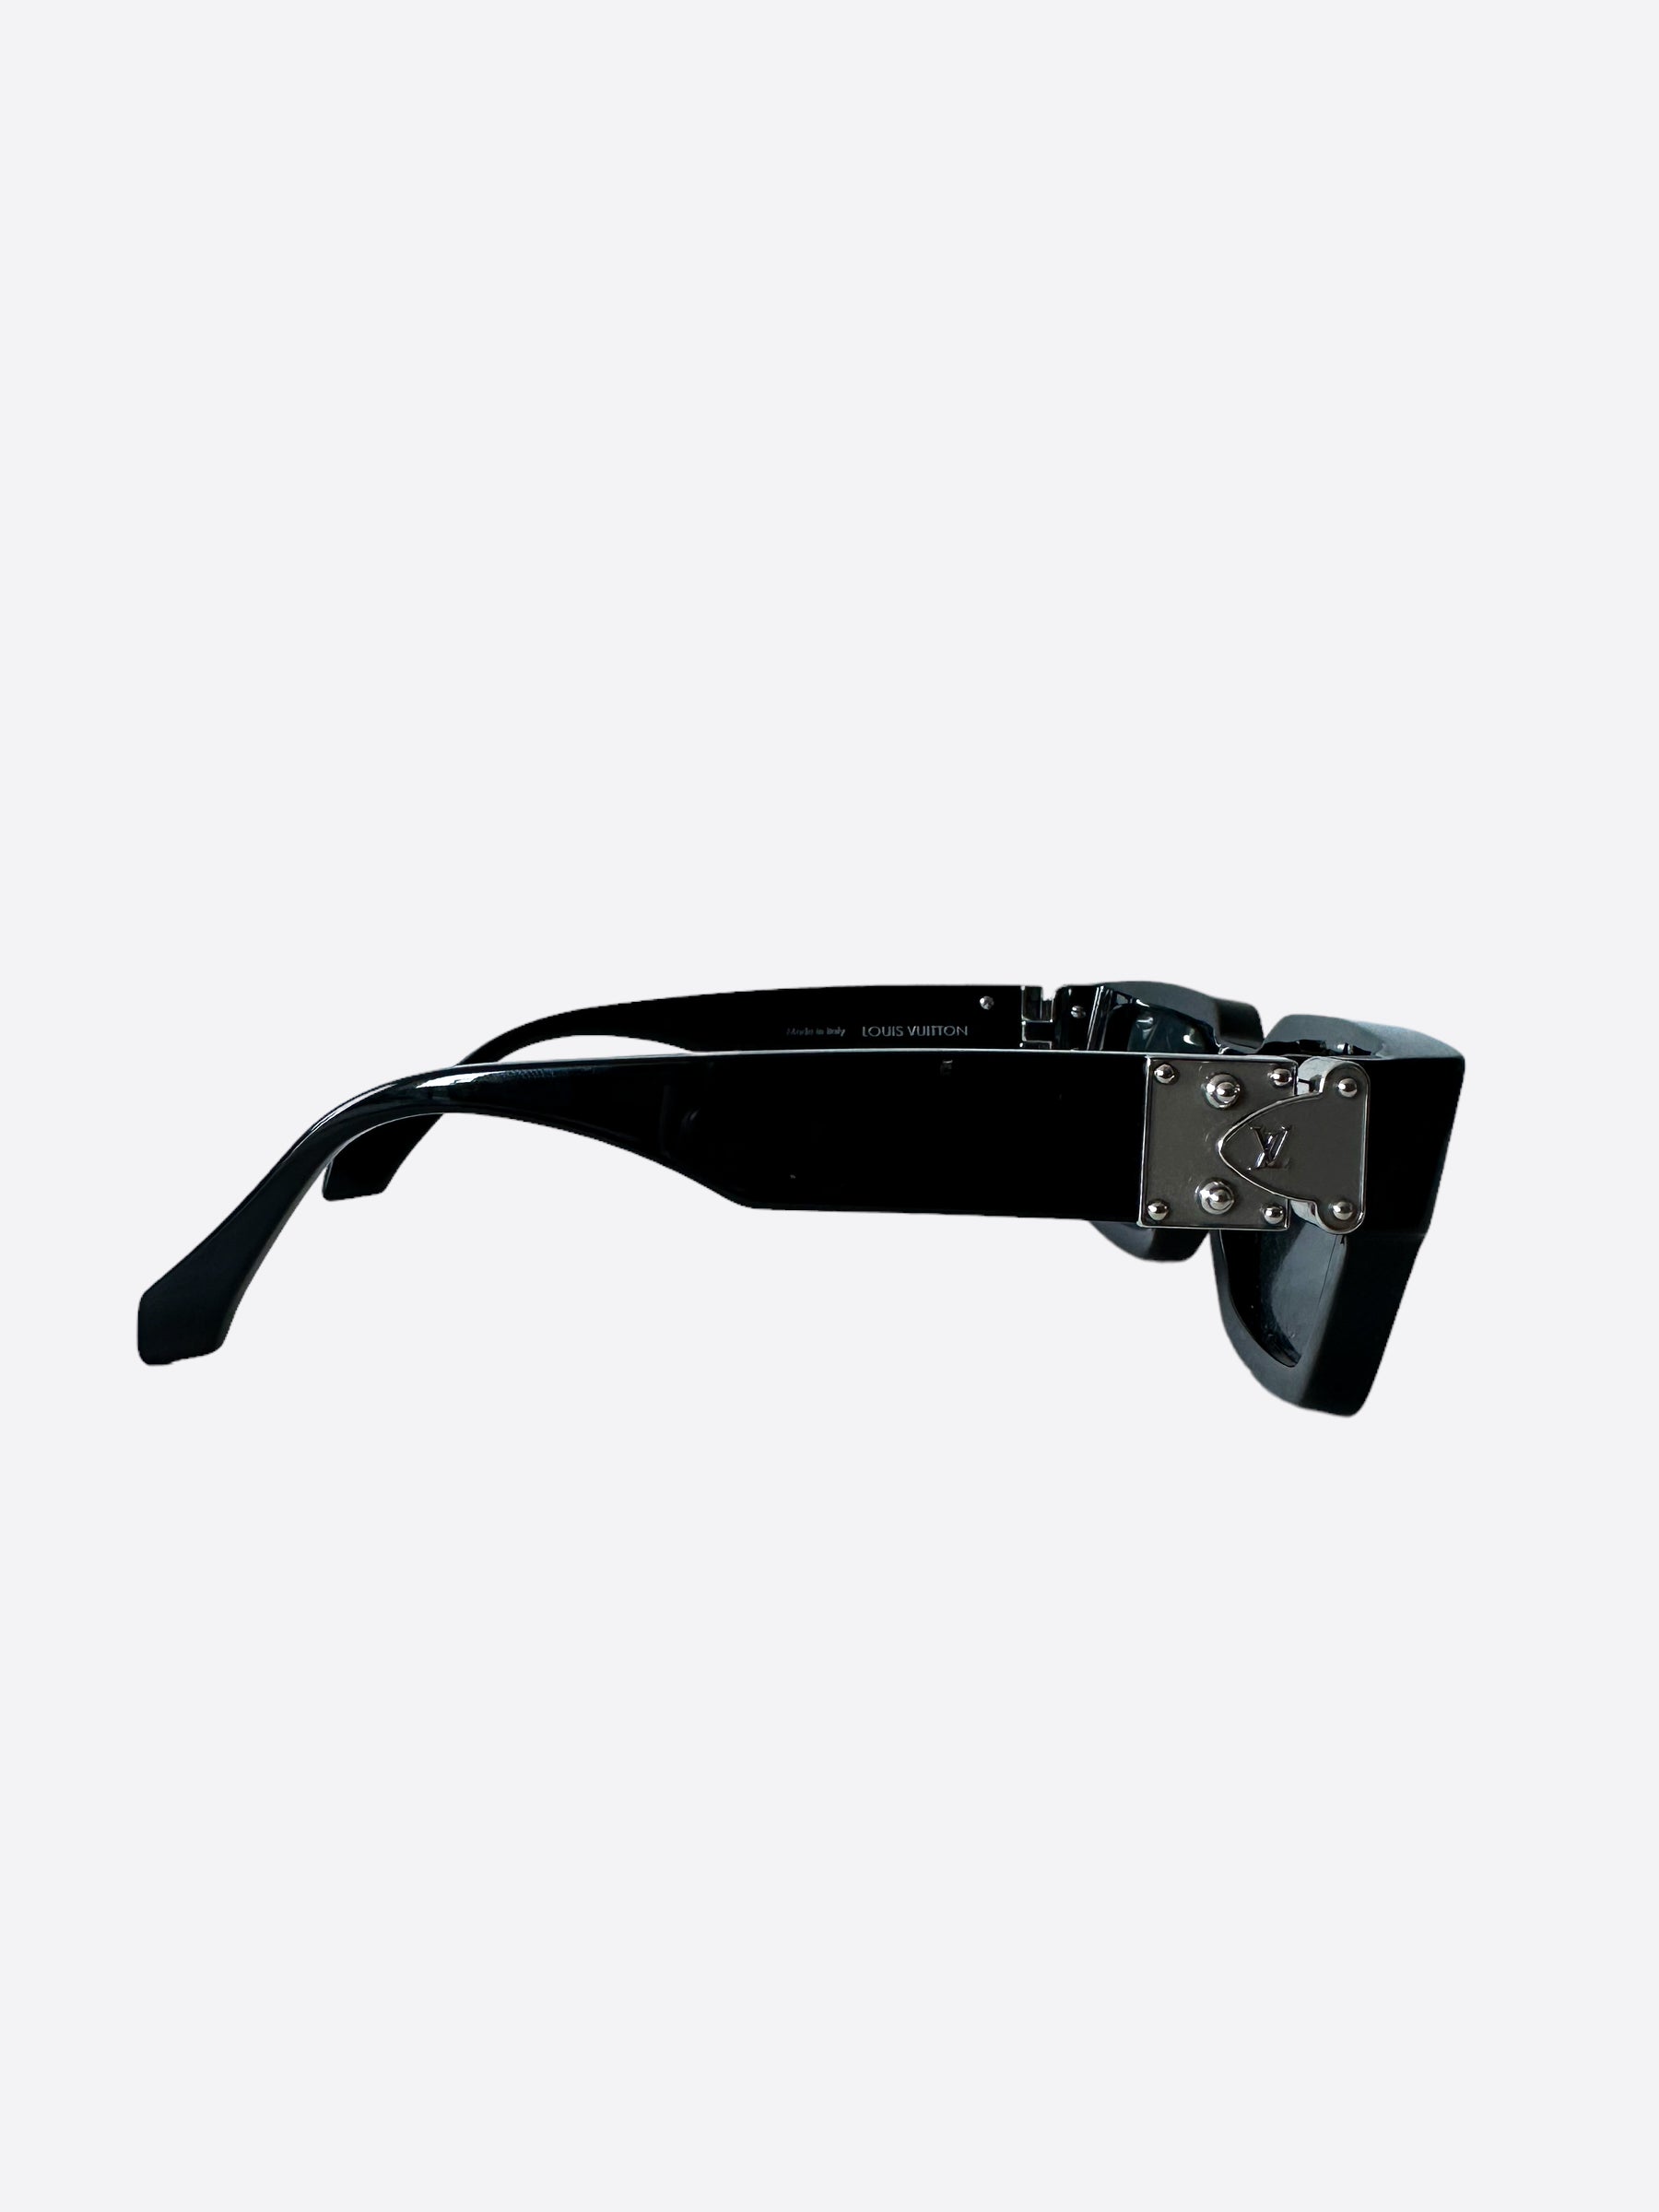 Louis Vuitton LV Match Sunglasses Black Acetate. Size E